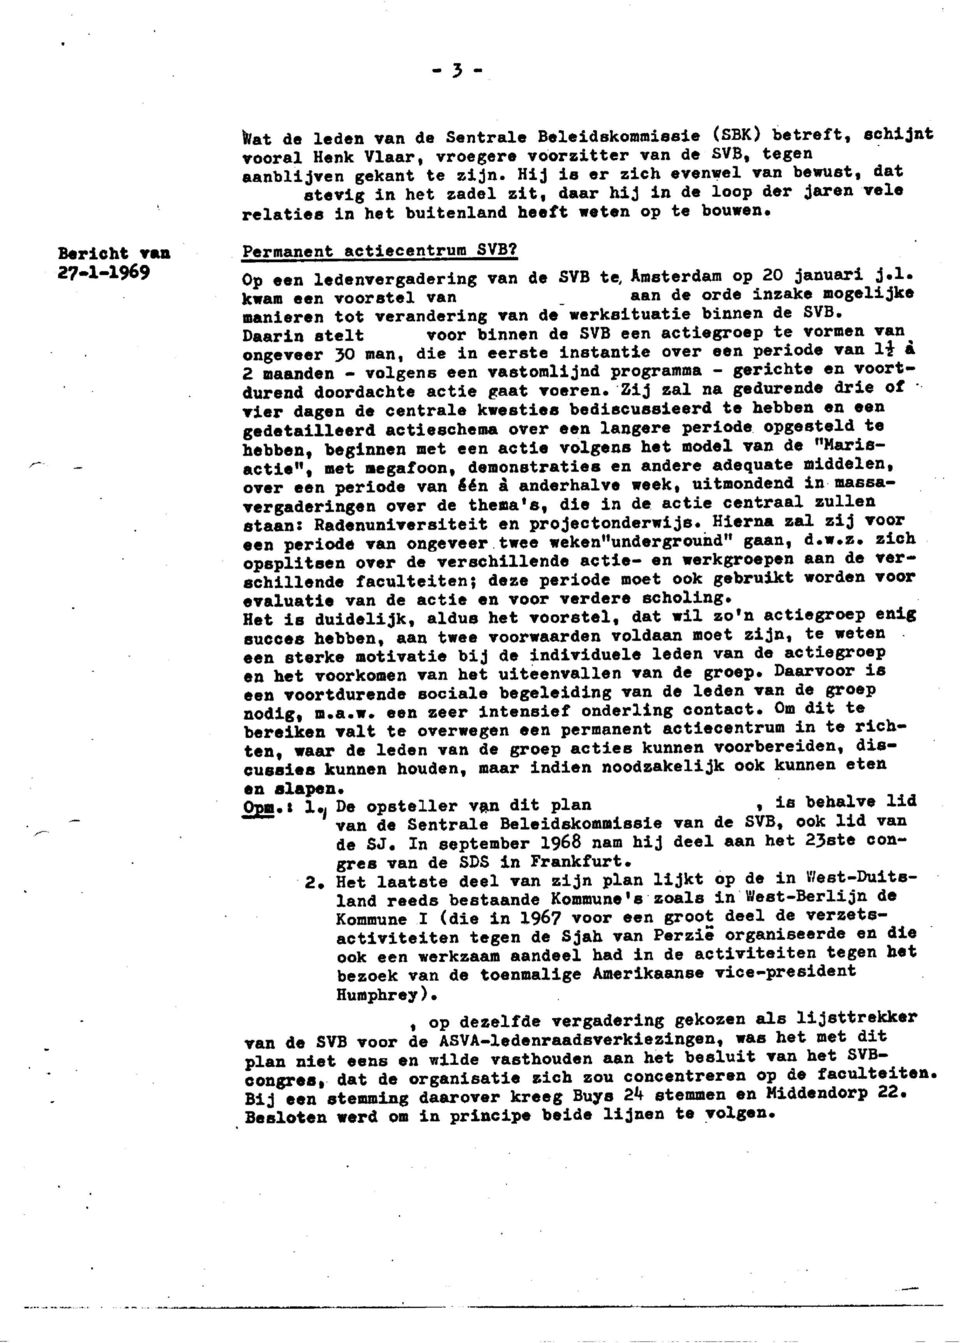 27-1-1969 Op een ledenvergadering van de SVB te, Amsterdam op 20 januari j.l. kwam een voorstel van _ aan de orde inzake mogelijke manieren tot verandering van de werksituatie binnen de SVB.